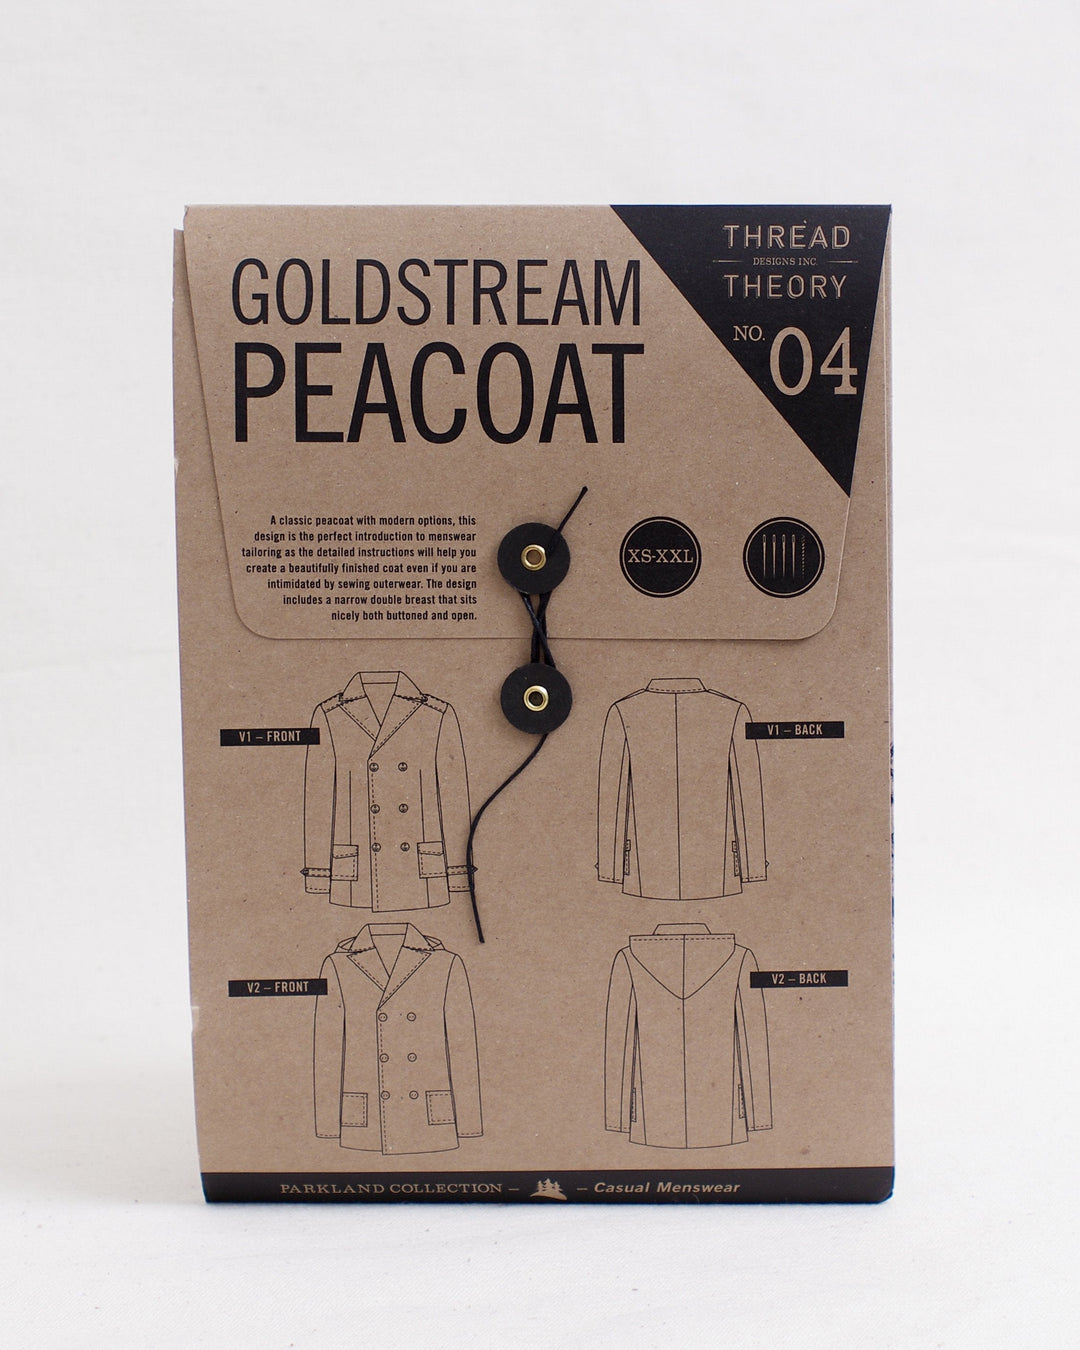 Goldstream Peacoat - Thread Theory